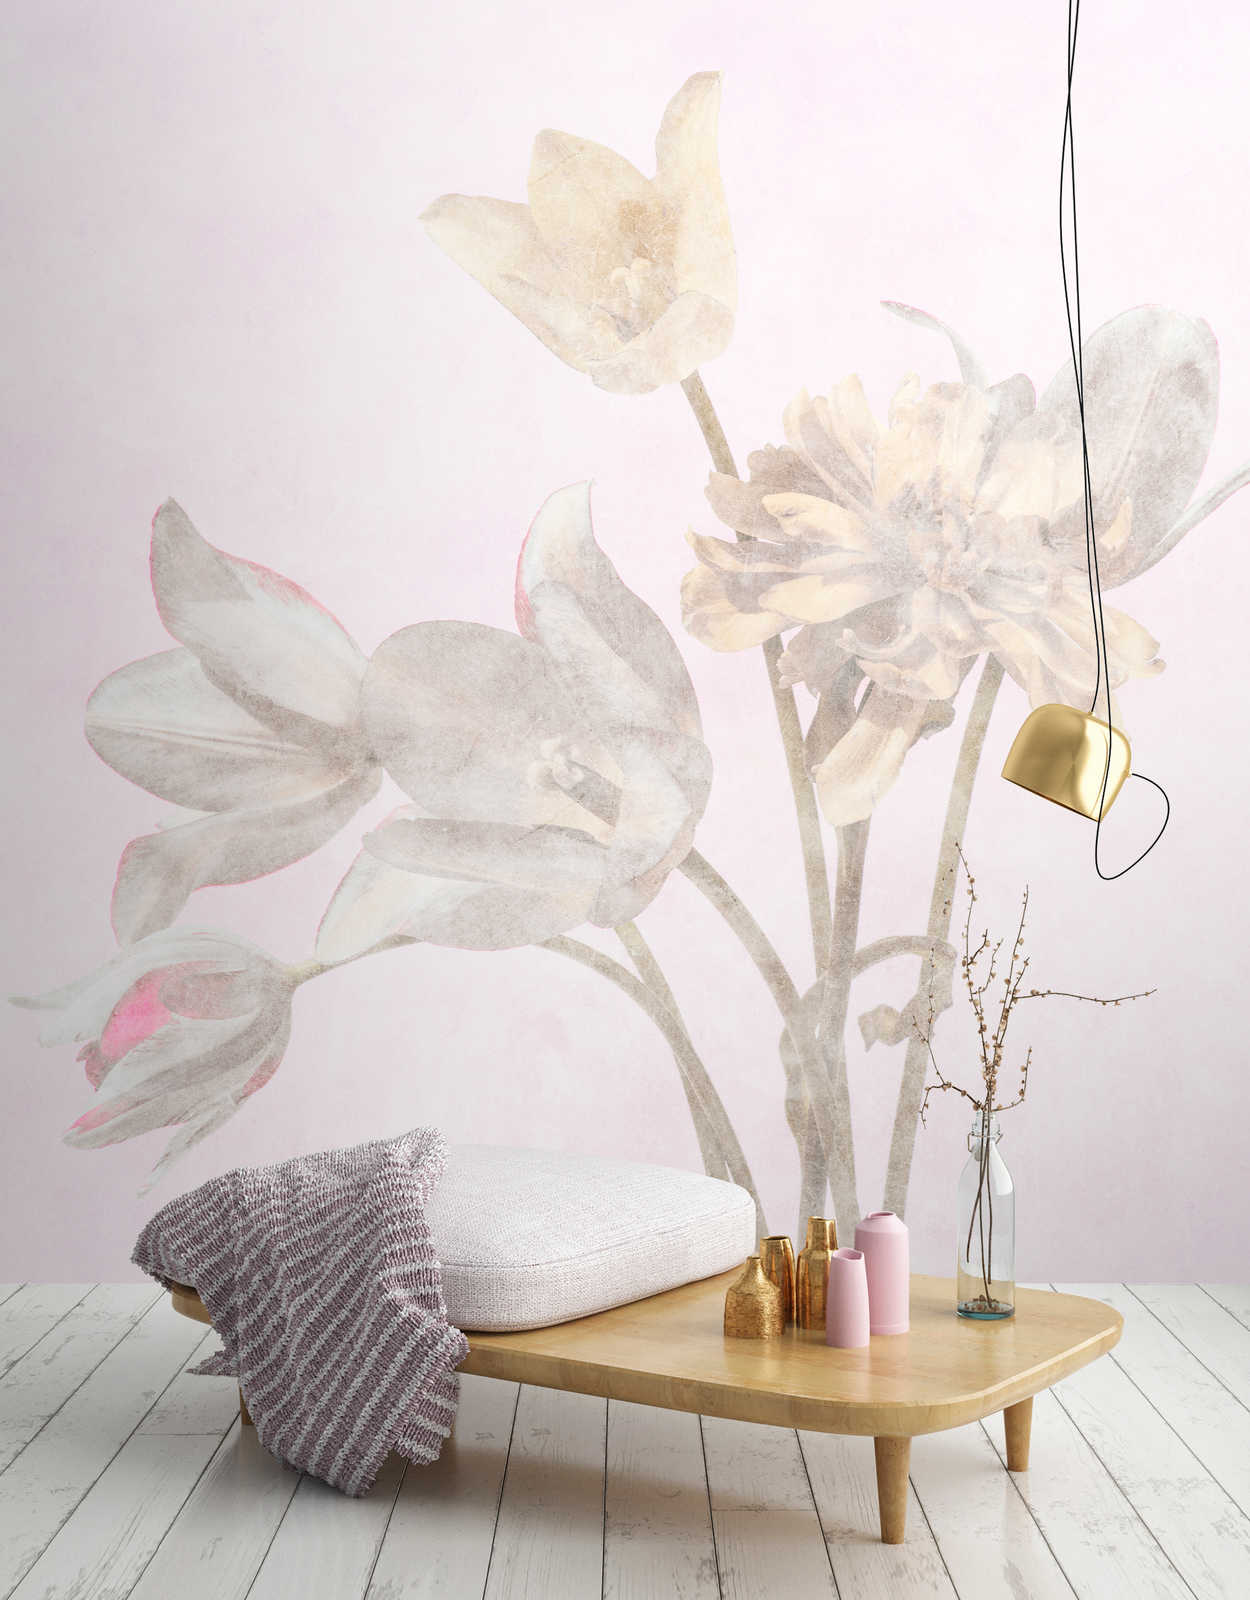             Morning Room 1 – Blumen Fototapete Blüten im verblassten Stil
        